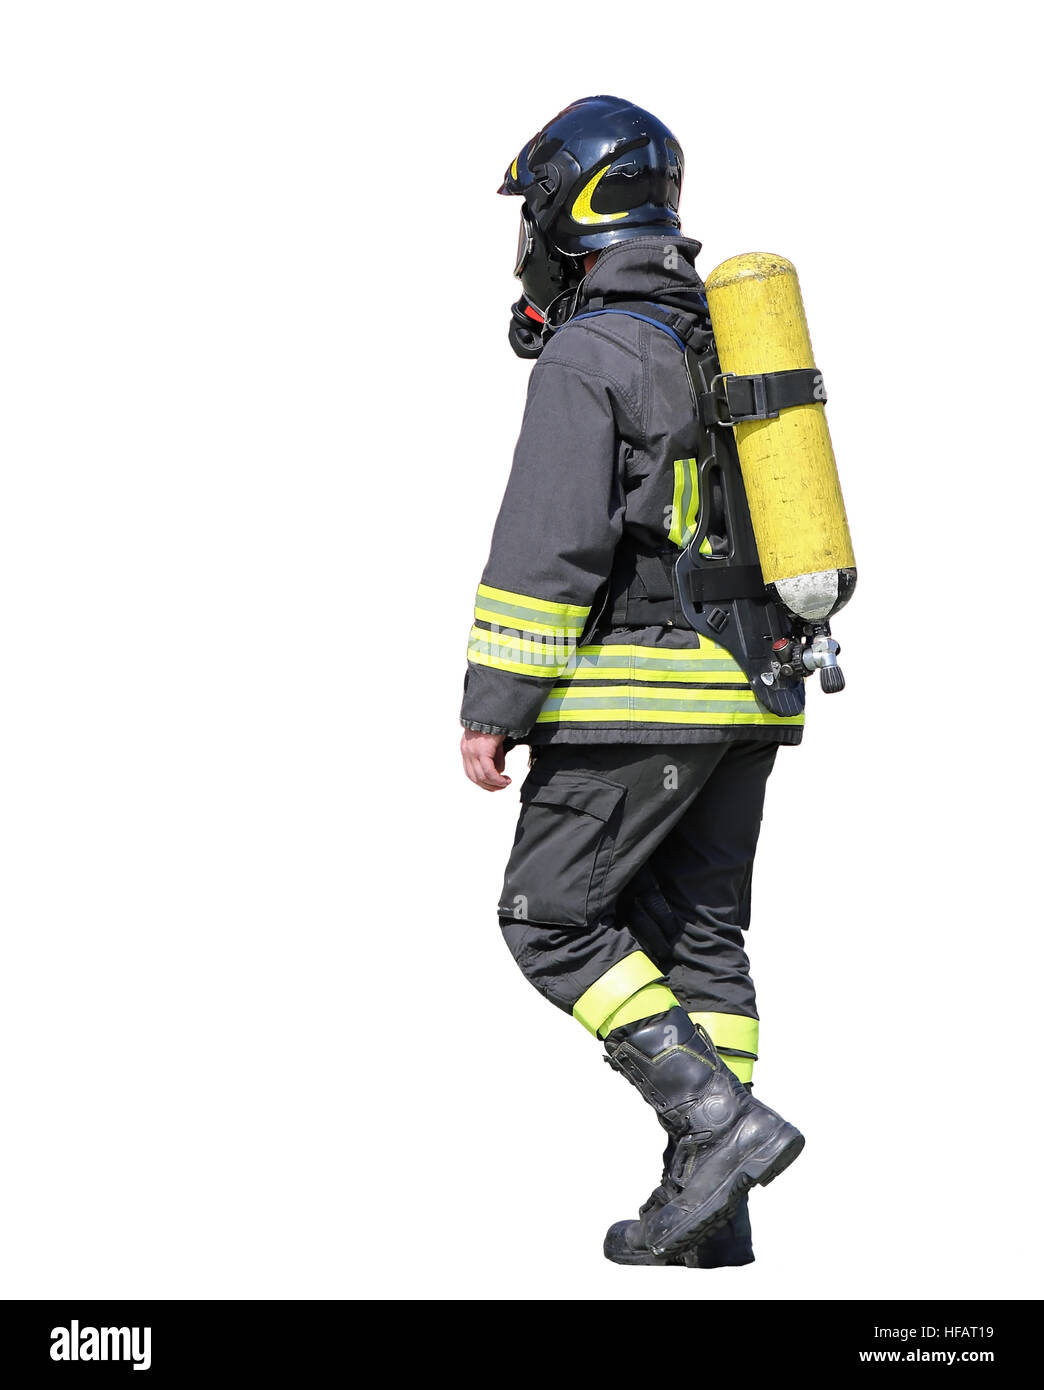 Bombero con tanque de oxígeno para respirar durante los incendios EN BLANCO Foto de stock